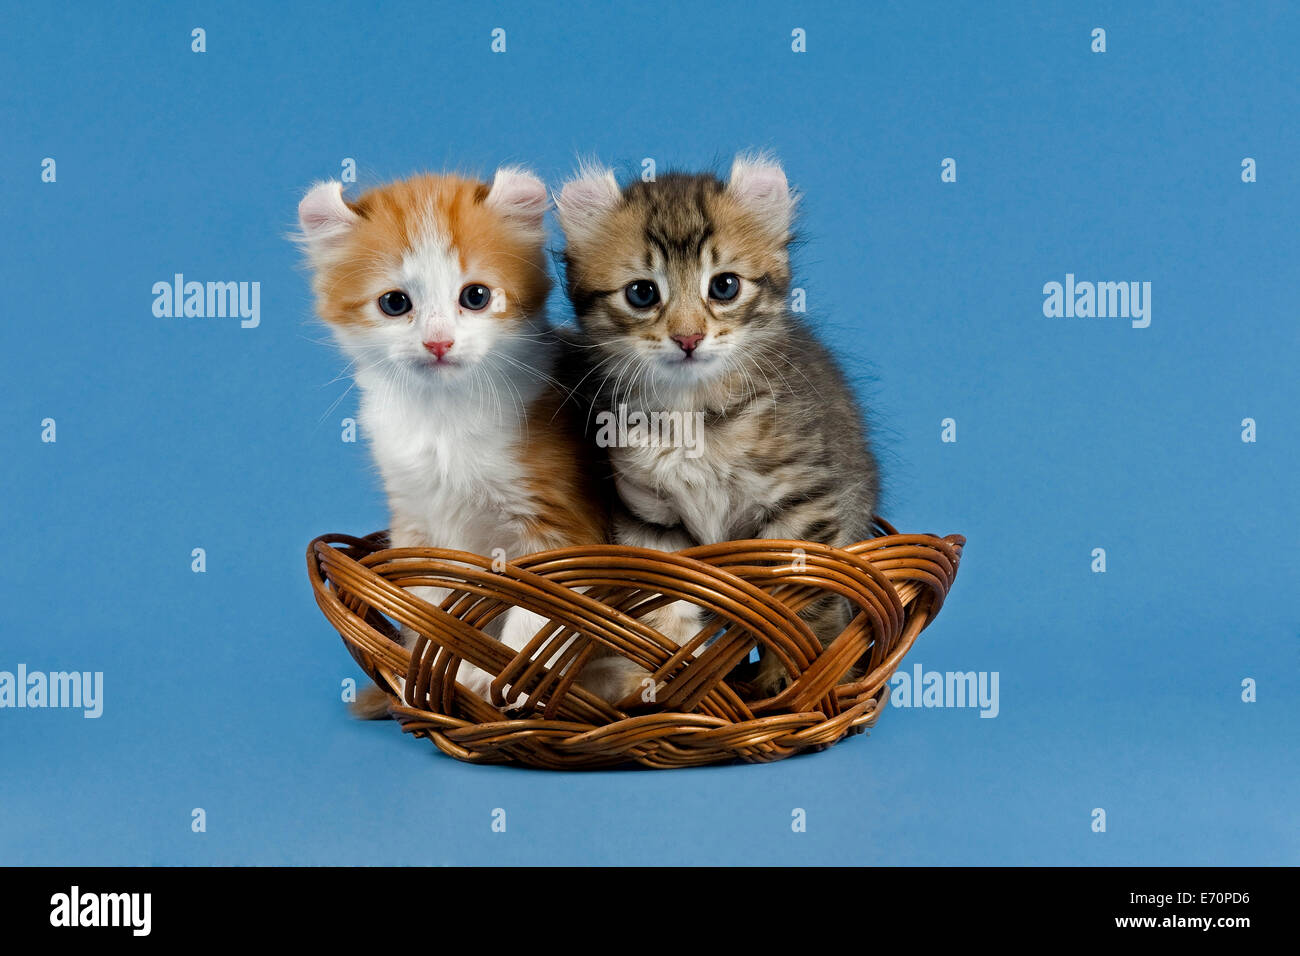 Les chats Pedigree, American Curl, race de chat, deux chatons dans un panier Banque D'Images